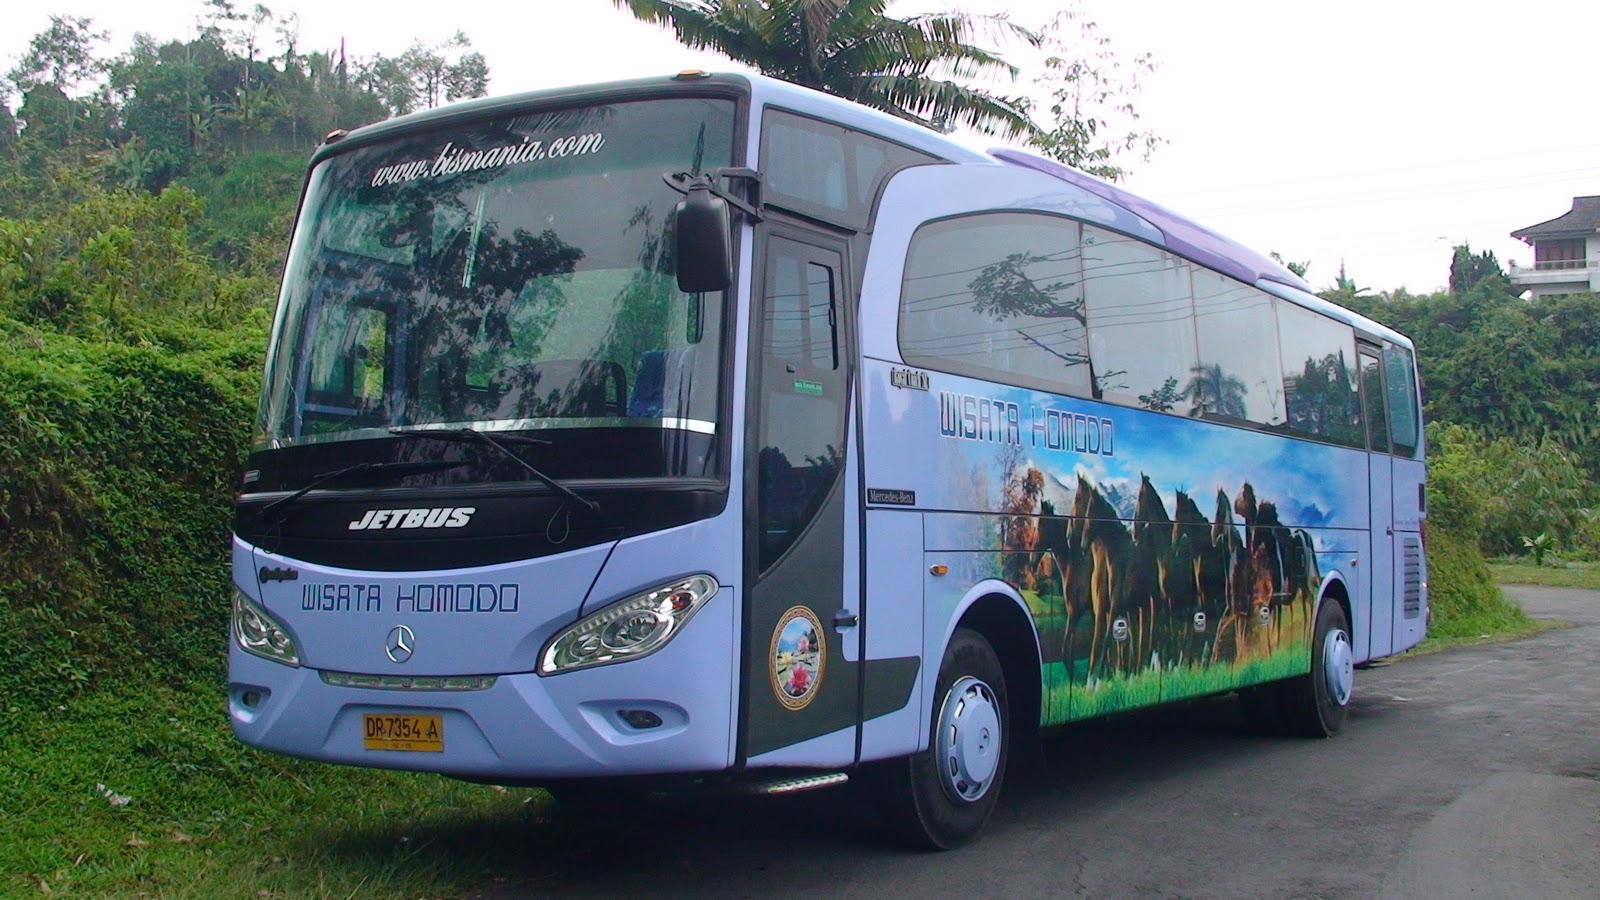 PO. Wisata Komodo (Bali) TERMINAL BUS PARIWISATA (NANDA